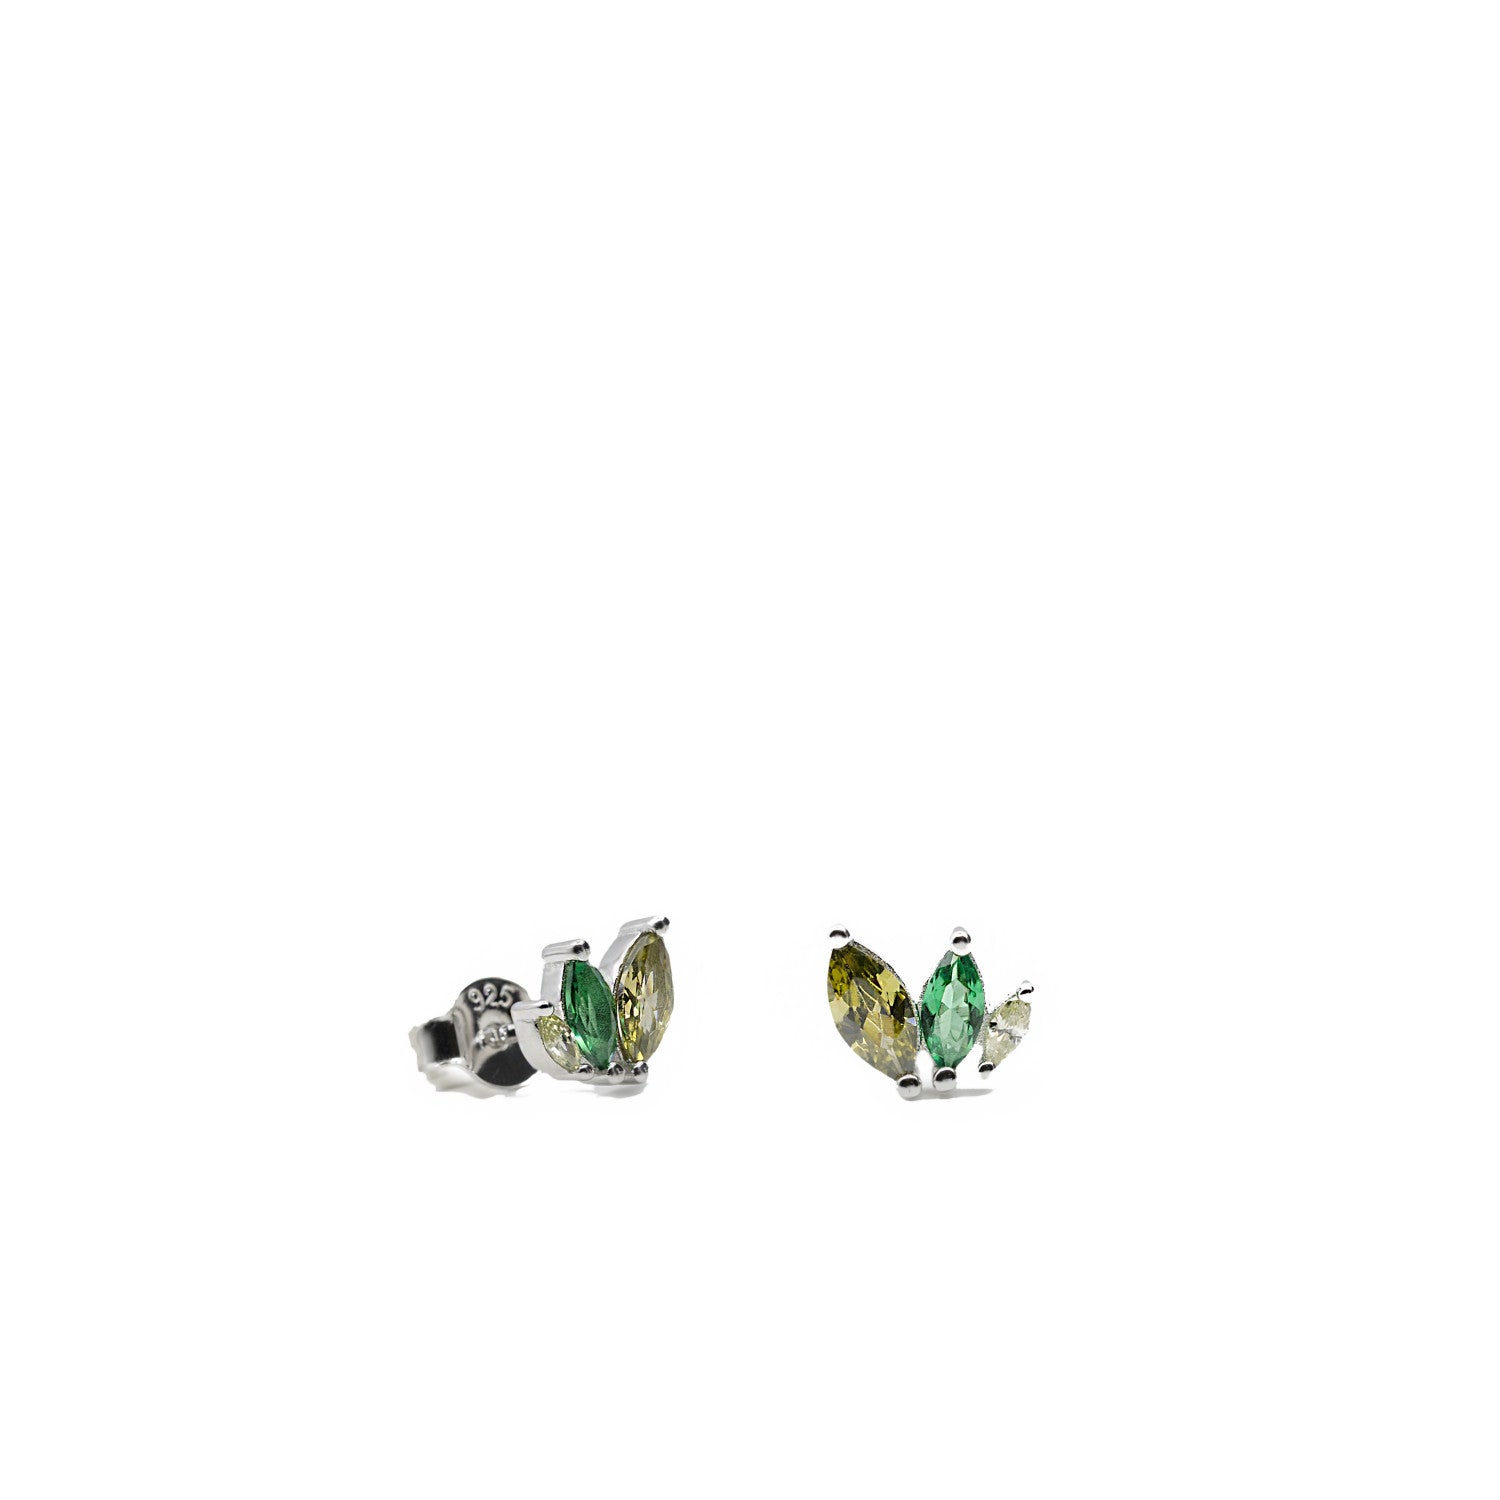 Pendientes pequeños con gemas en tonos verdes